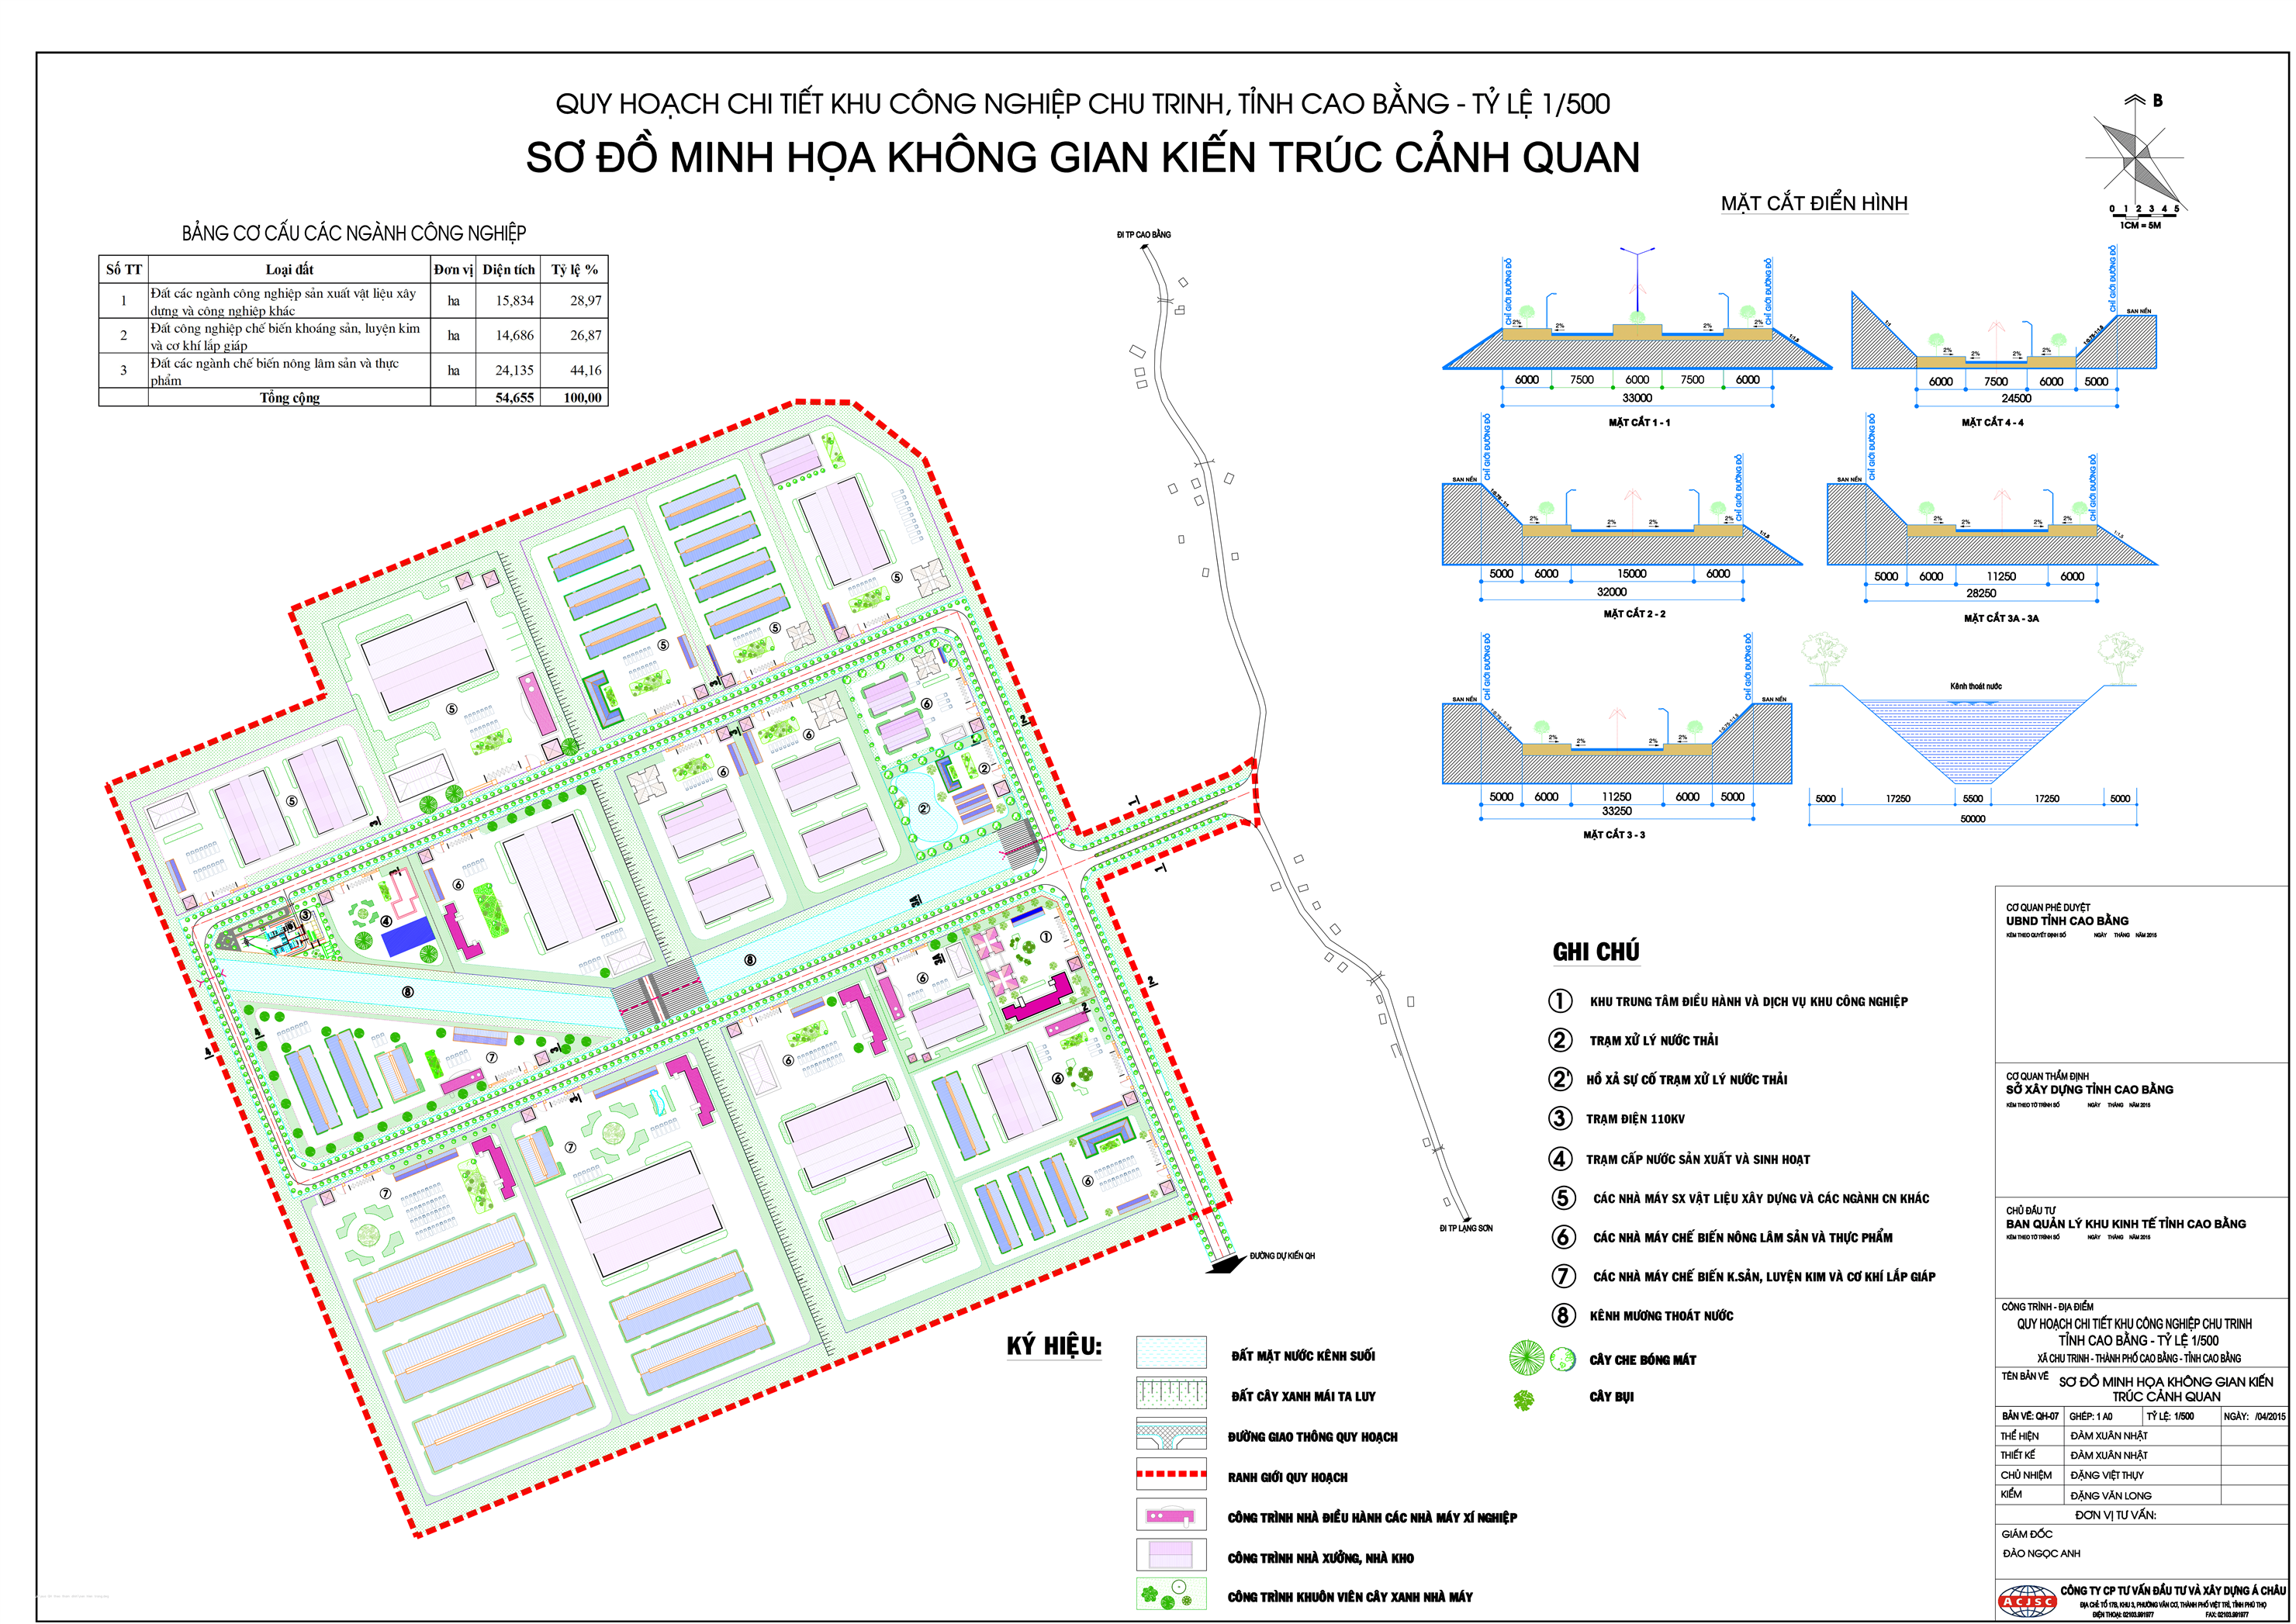 Quy hoạch tỷ lệ 1/500 khu công nghiệp Chu Trinh, thành phố Cao Bằng, tỉnh Cao Bằng